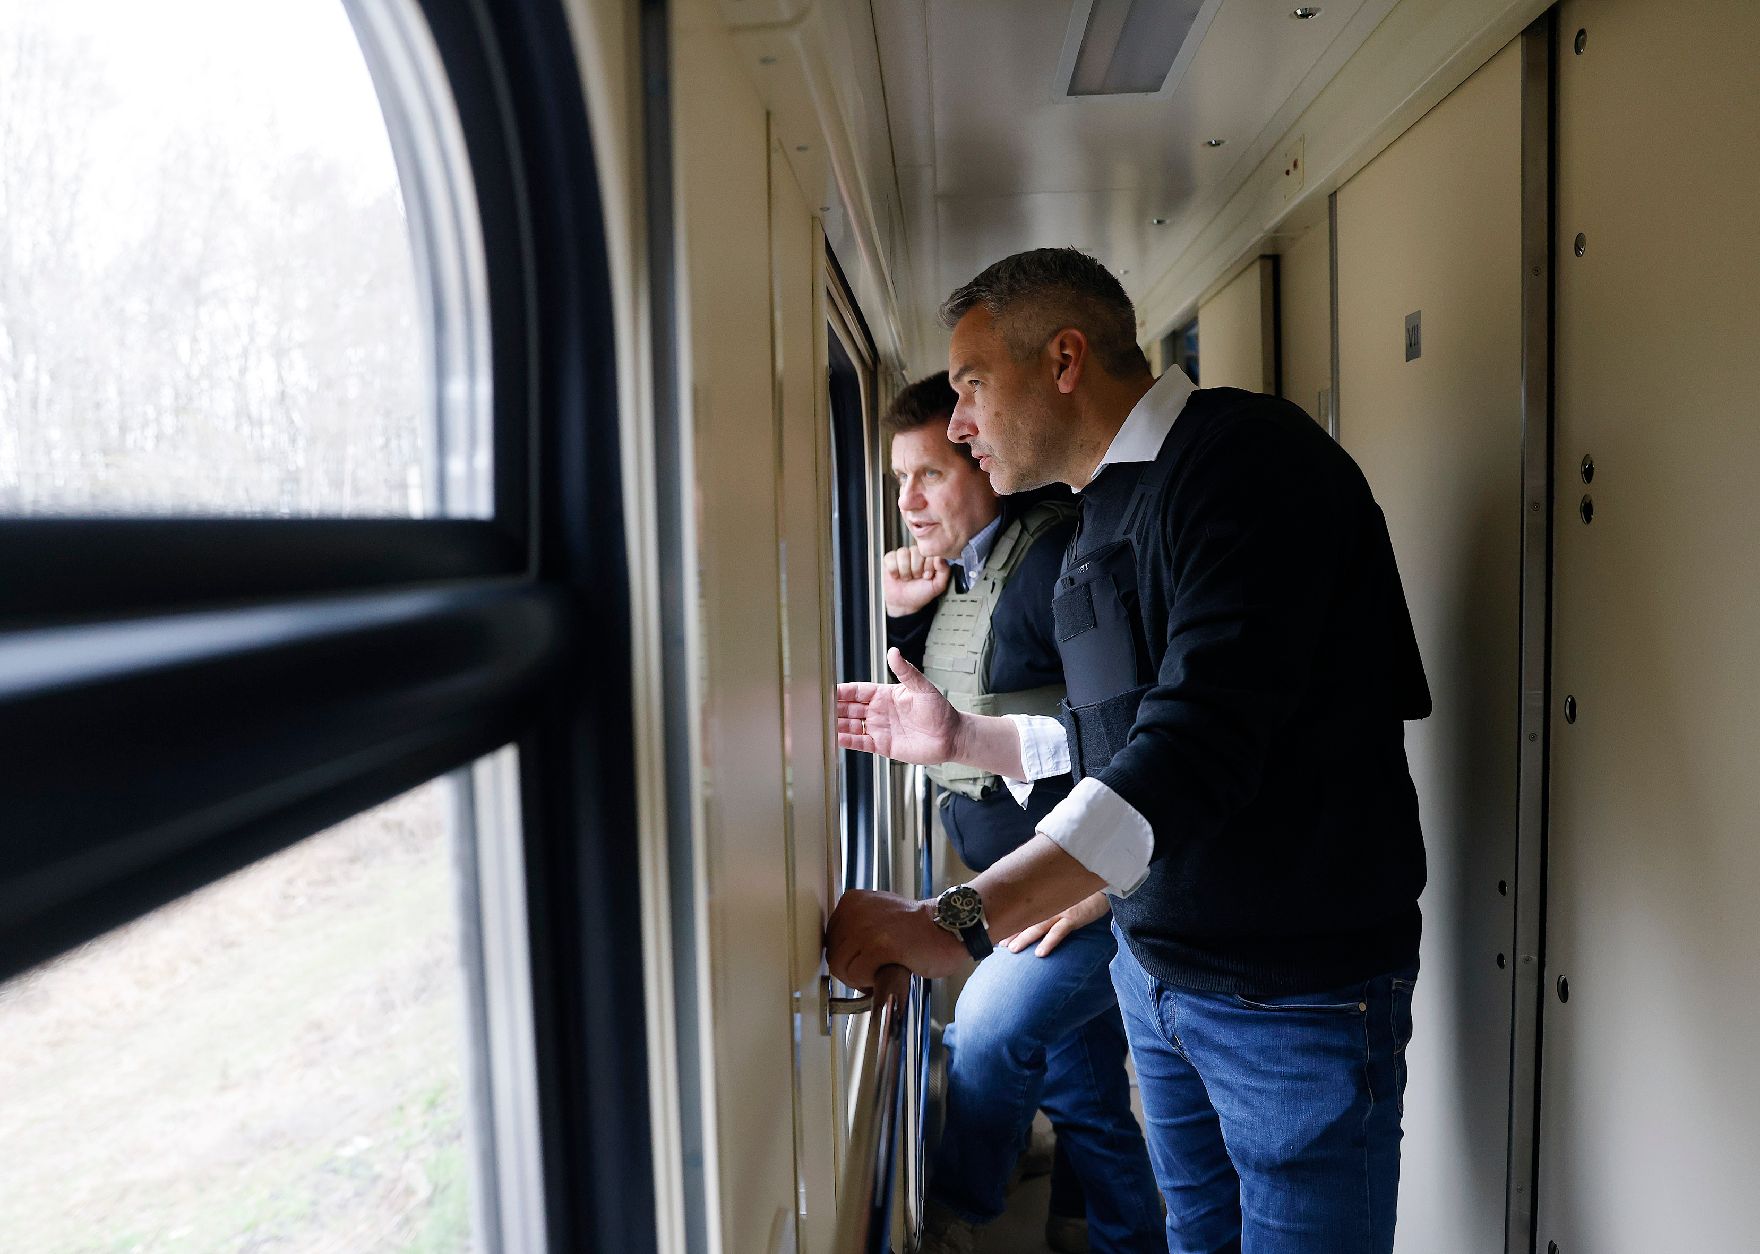 Am 9. April 2022 reiste Bundeskanzler Karl Nehammer (r.) zu einem Arbeitsbesuch nach Kiev. Im Bild mit dem Koordinator Michael Takacs (l.) im Zugfahrt nach Kiev.